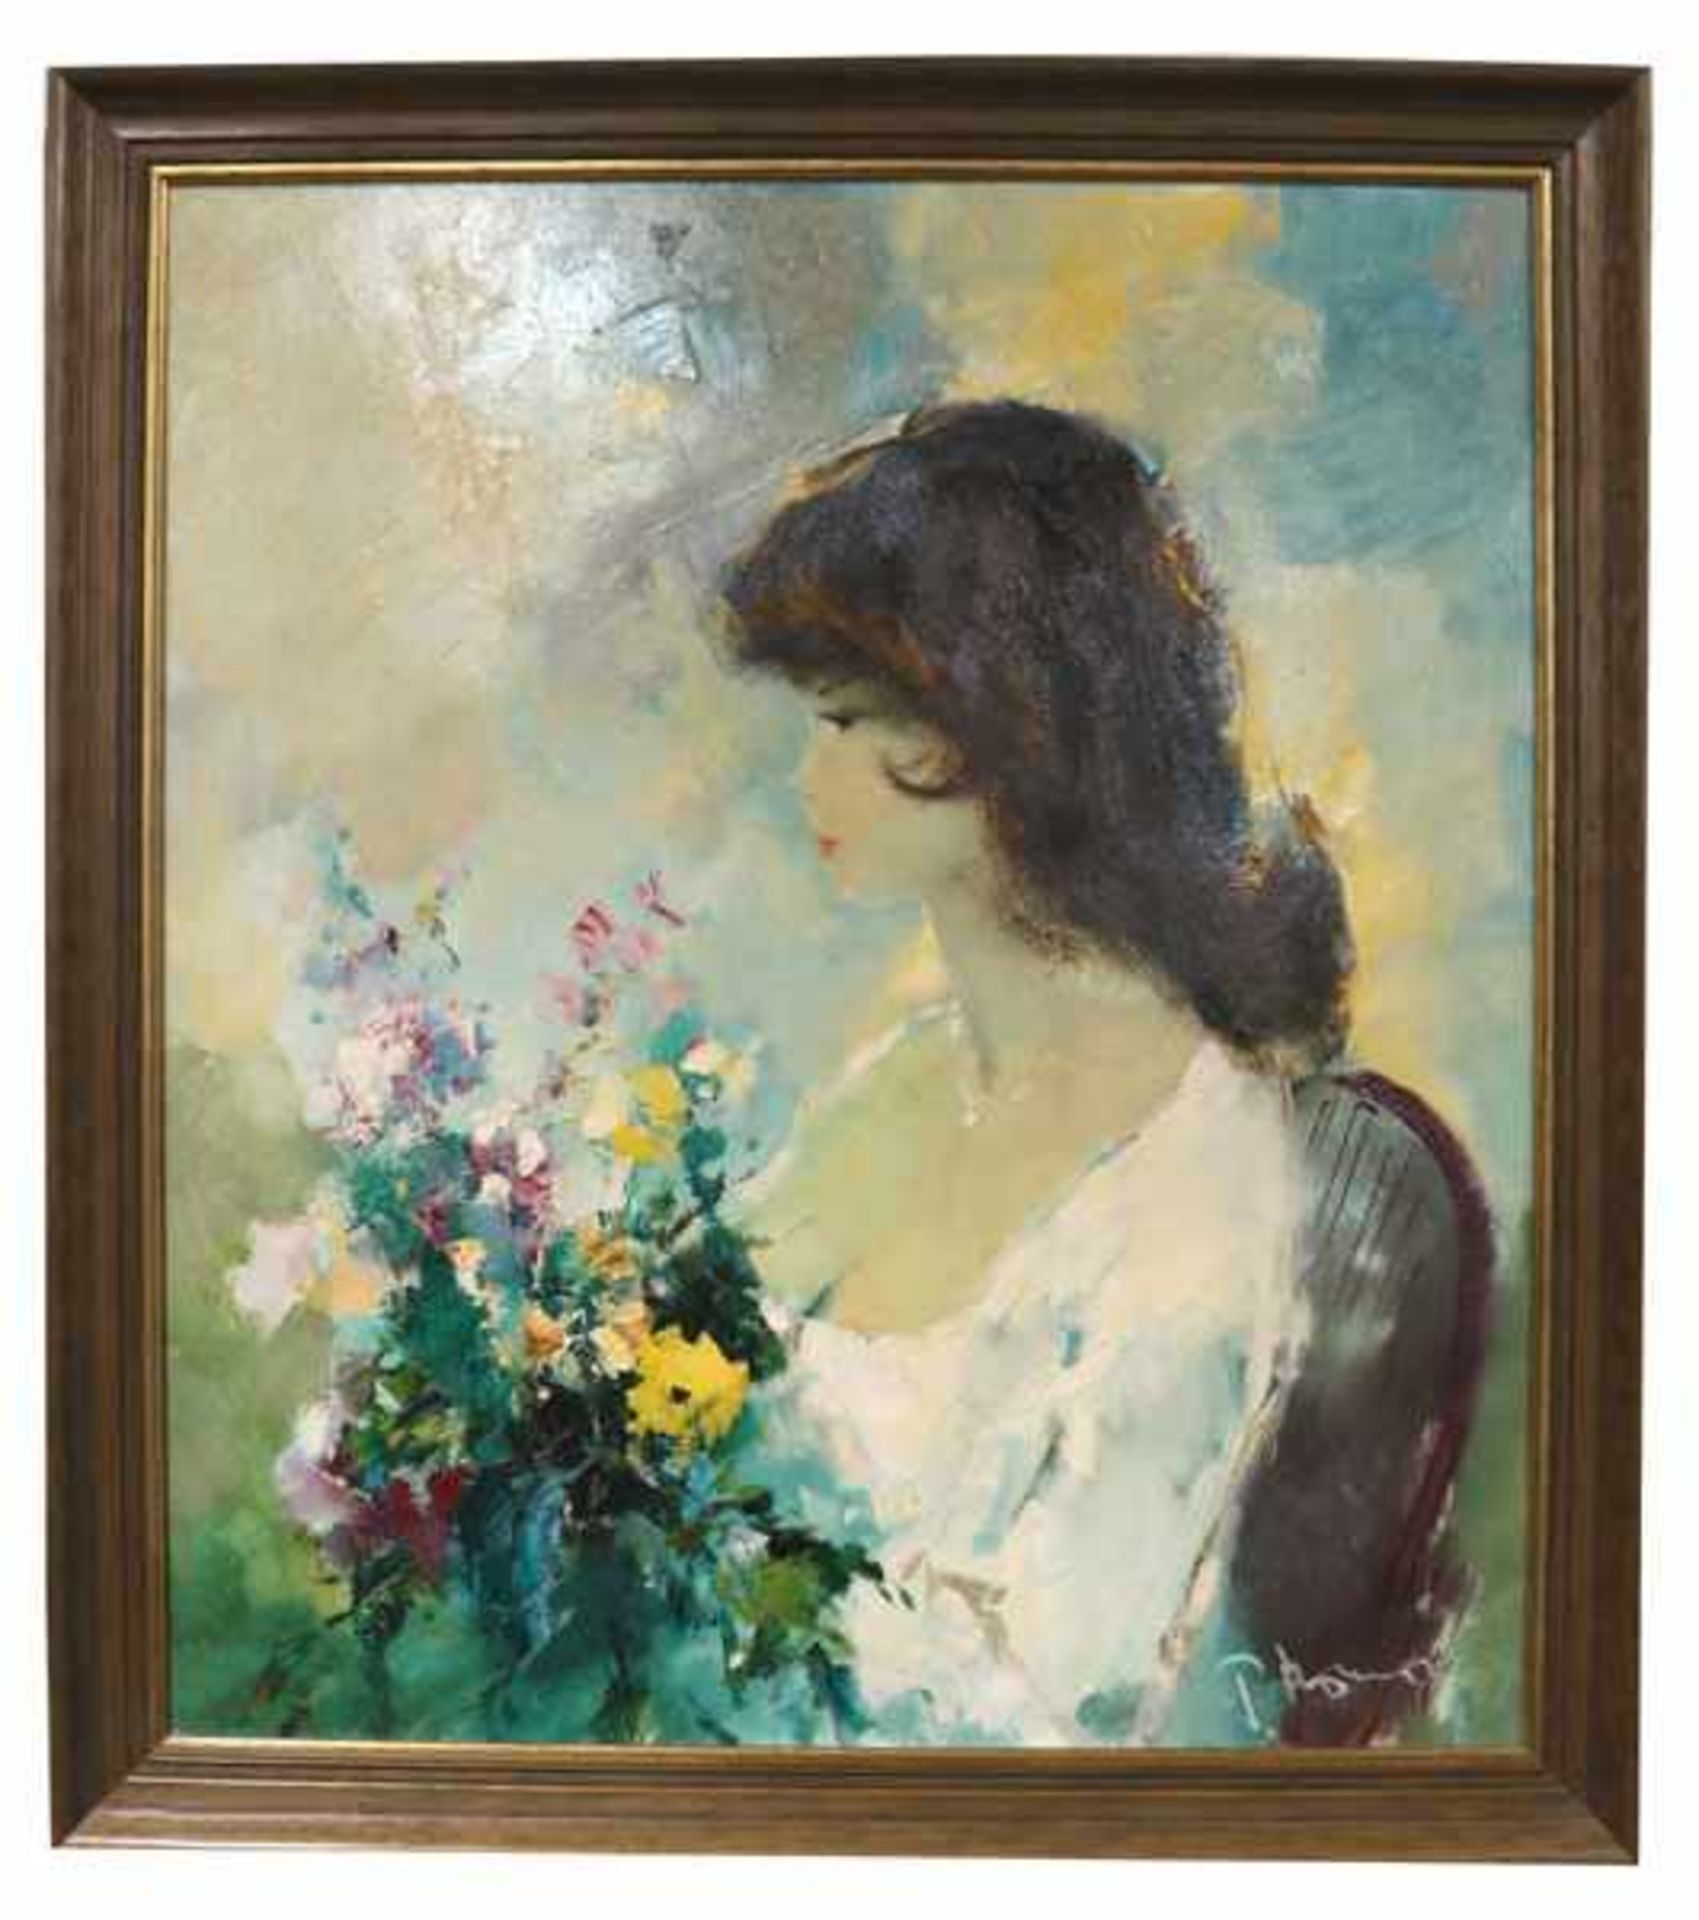 Gemälde ÖL/LW 'Mädchen mit Blumen', signiert P. Morrò, * 1925 Leipzig + 2013, (Ingfried Henze),